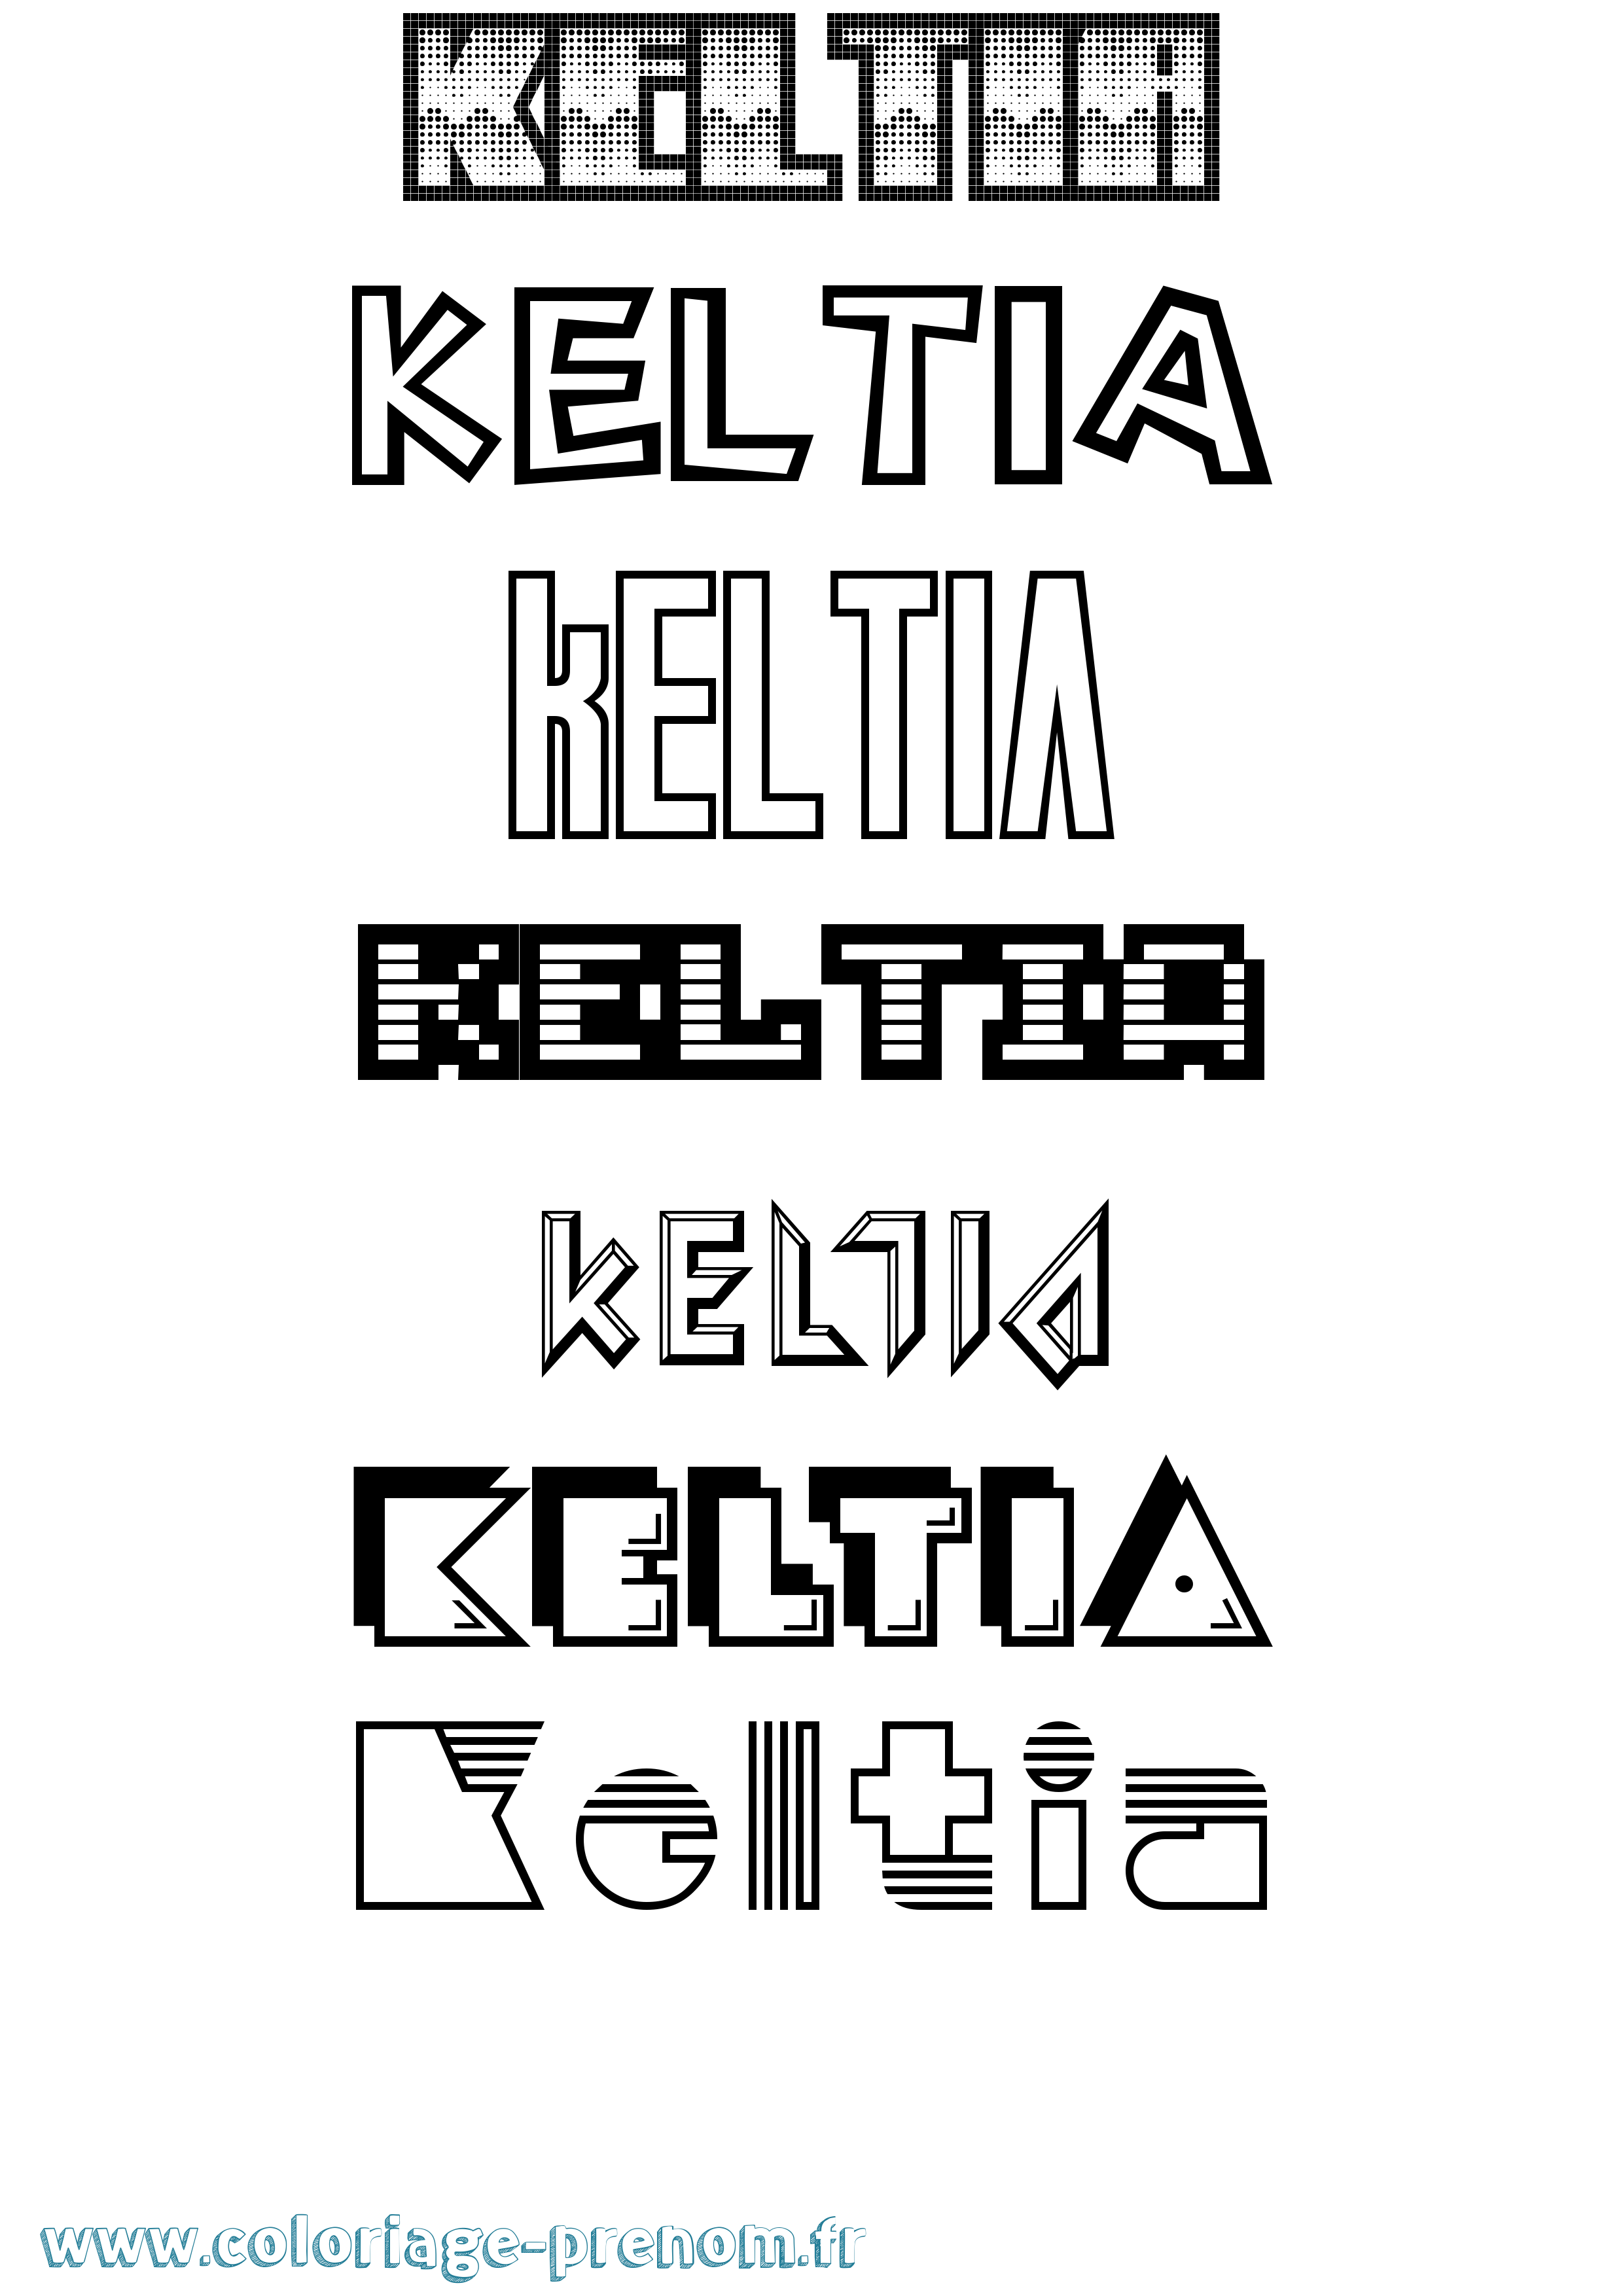 Coloriage prénom Keltia Jeux Vidéos